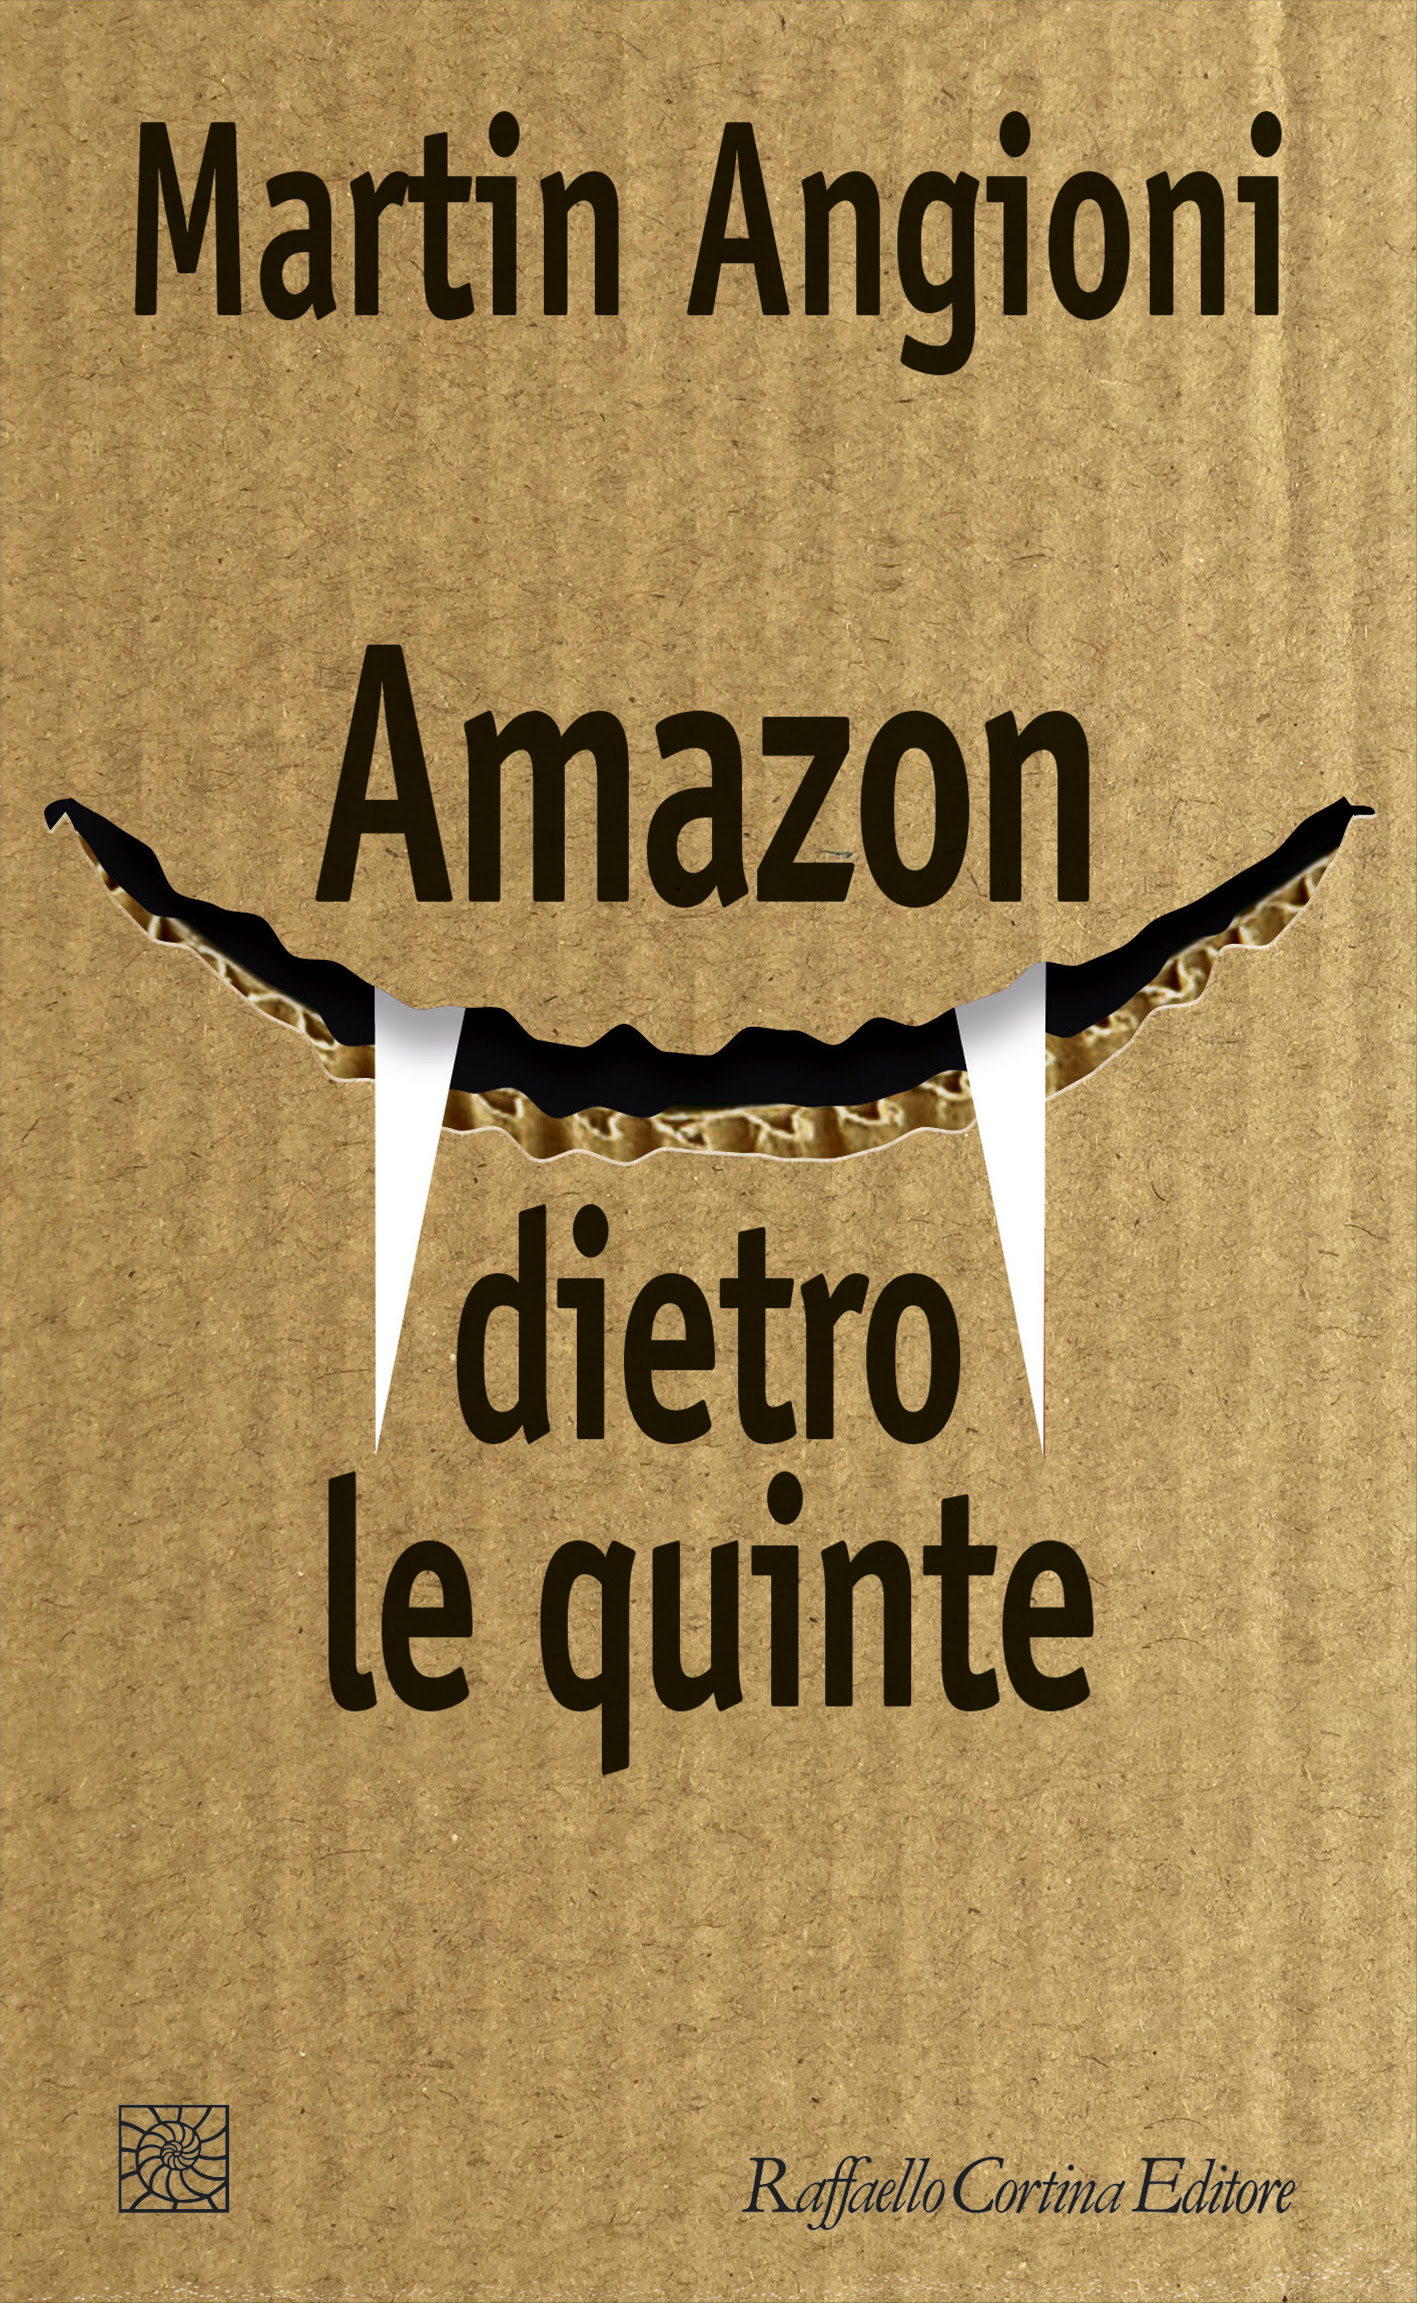 Angioni - Amazon dietro le quinte